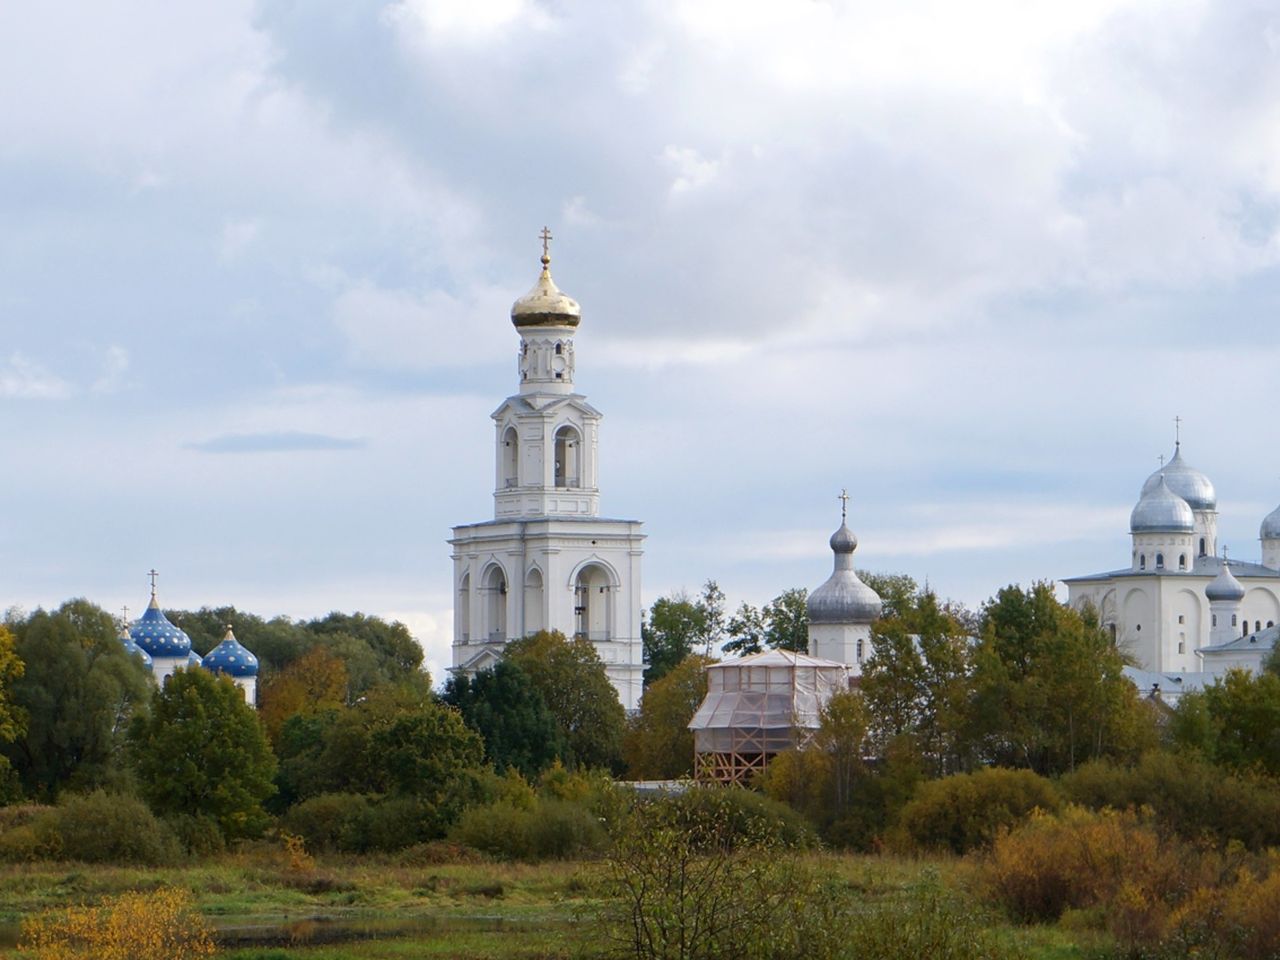 Групповая экскурсия в Великий Новгород | Цена 3100₽, отзывы, описание экскурсии